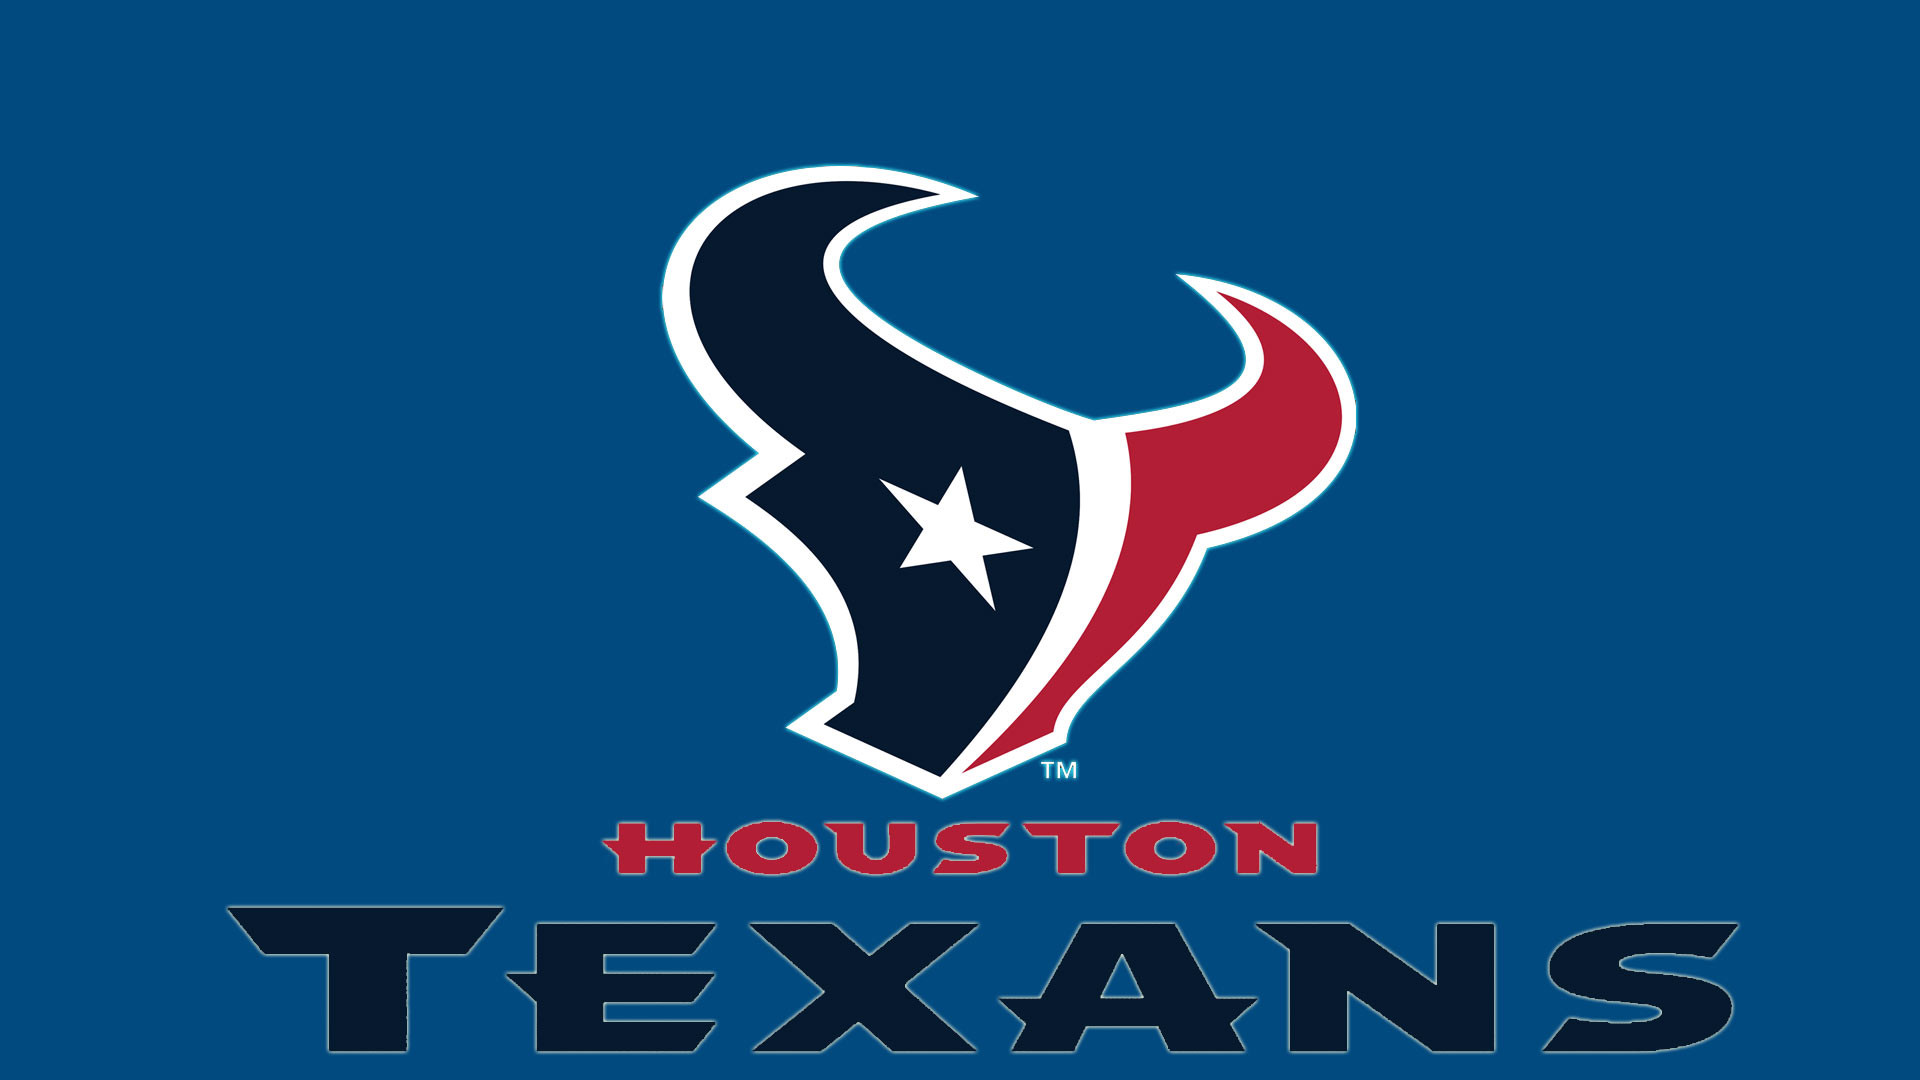 1920x1080 Houston Texans logo Hd 1080p Wallpaper screen size 1920X1080